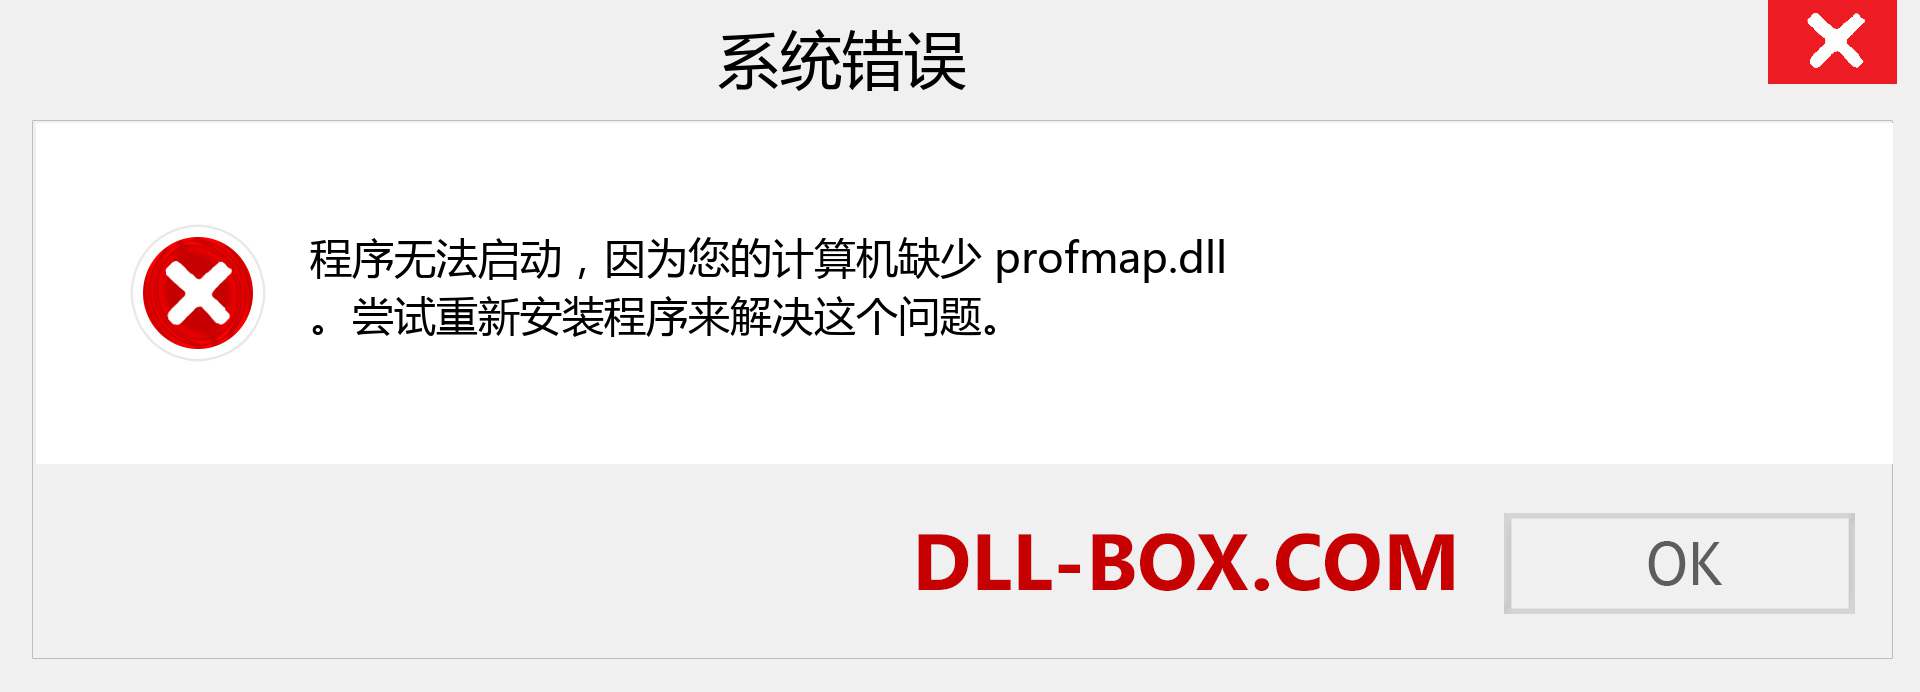 profmap.dll 文件丢失？。 适用于 Windows 7、8、10 的下载 - 修复 Windows、照片、图像上的 profmap dll 丢失错误